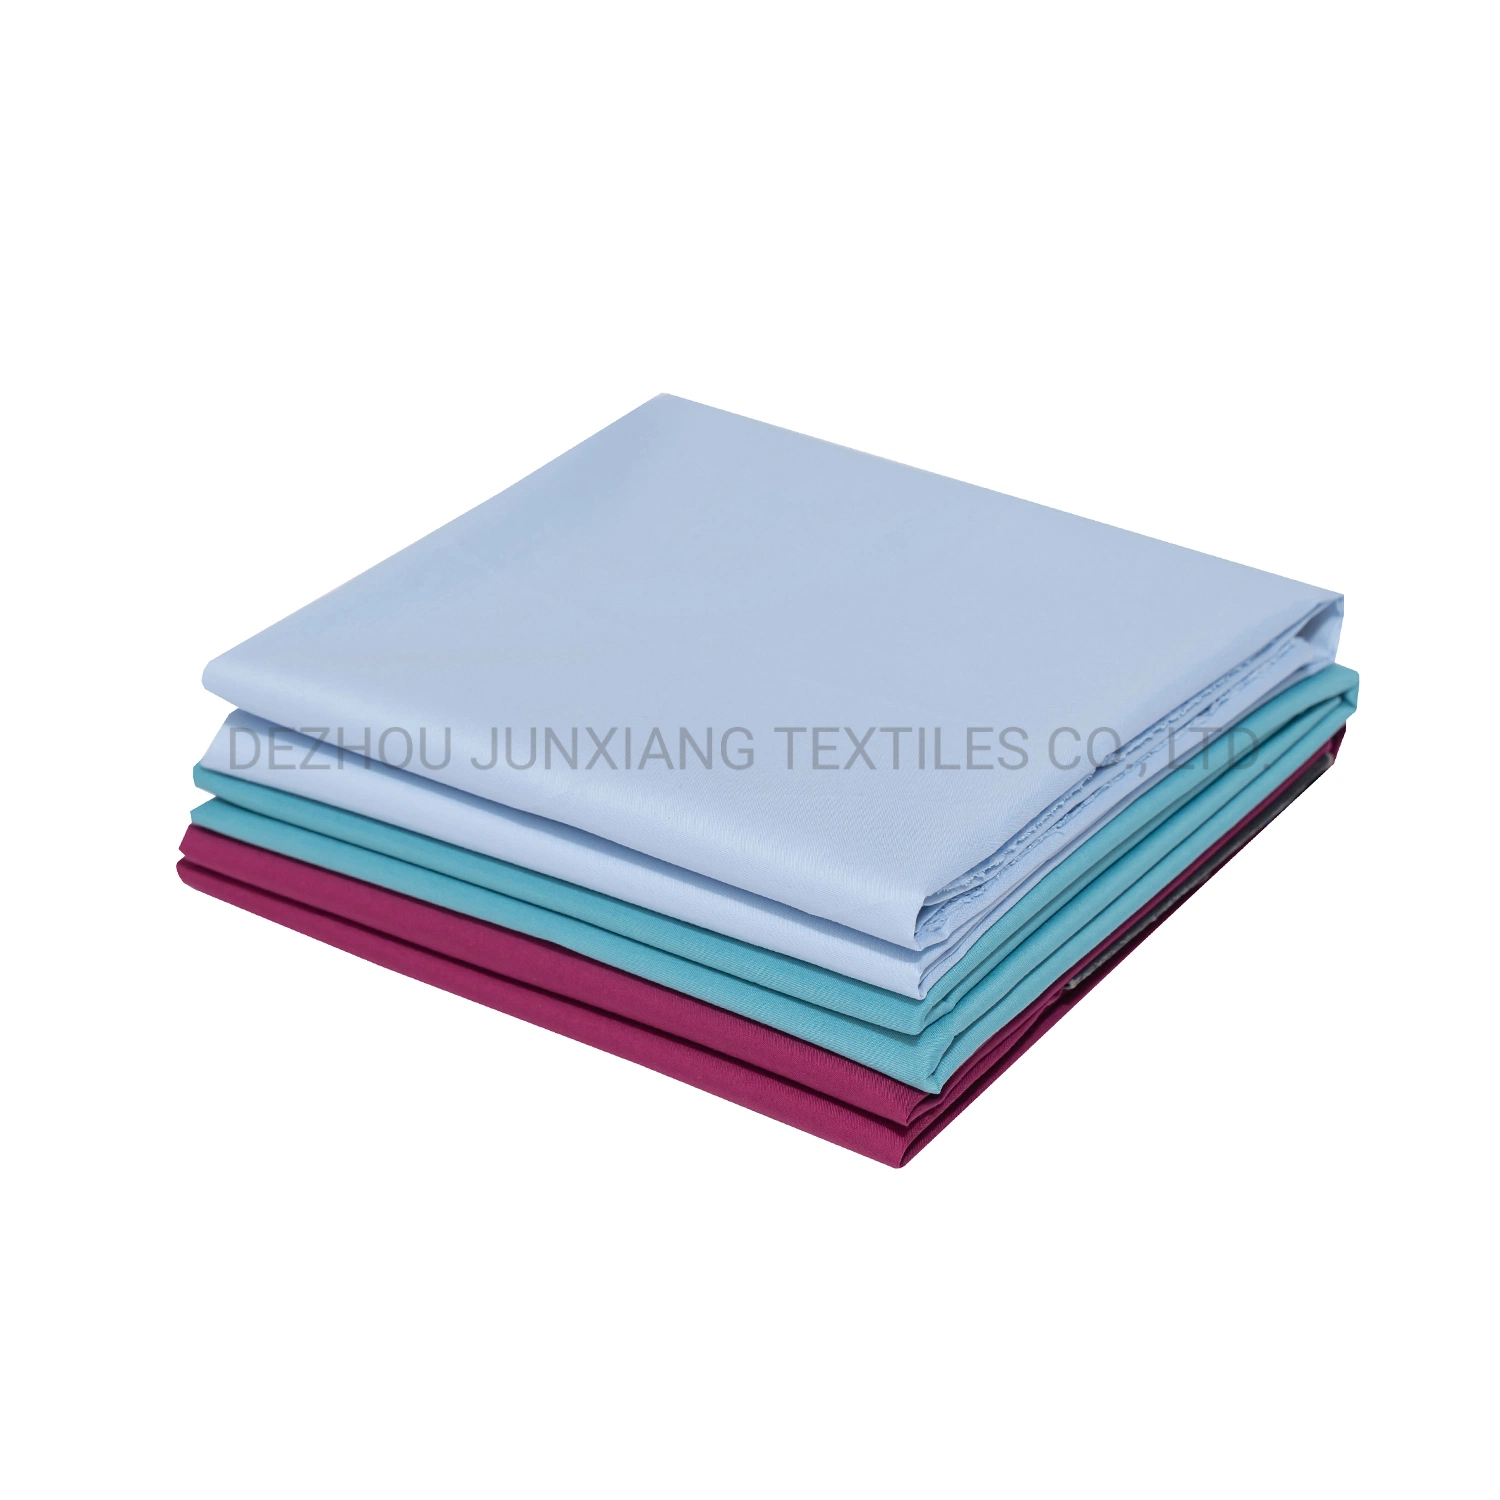 Haute qualité polyester coton 65 32 3spandex Tissu Tissu Tessuti Cotone Eau de Javel La preuve Tc 65/35 45*100D+40d 133*72 59"